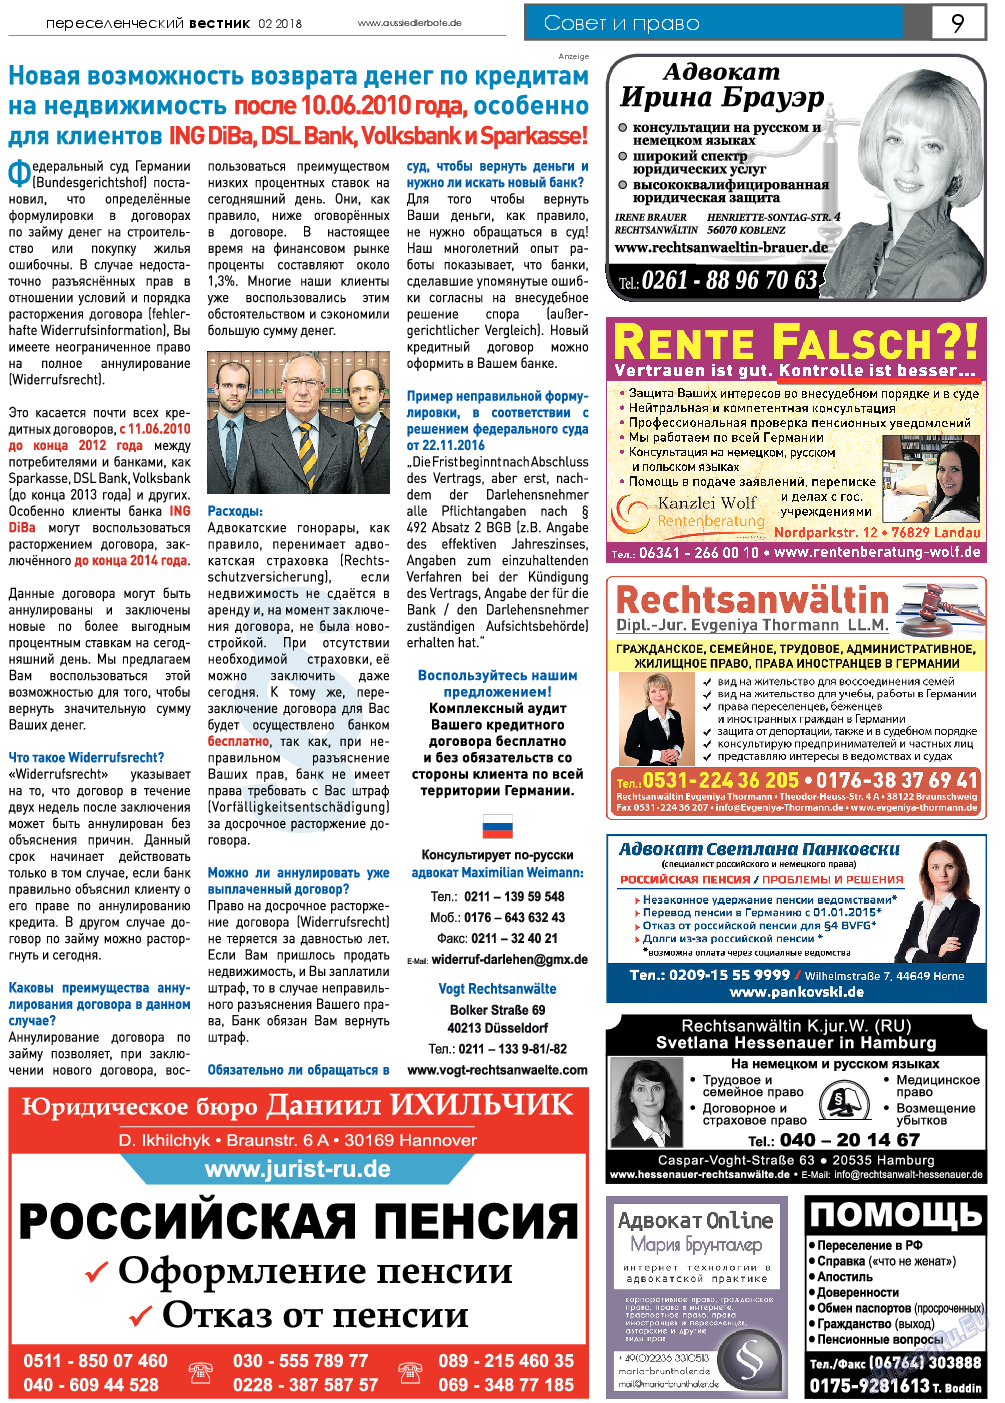 Переселенческий вестник (газета). 2018 год, номер 2, стр. 9